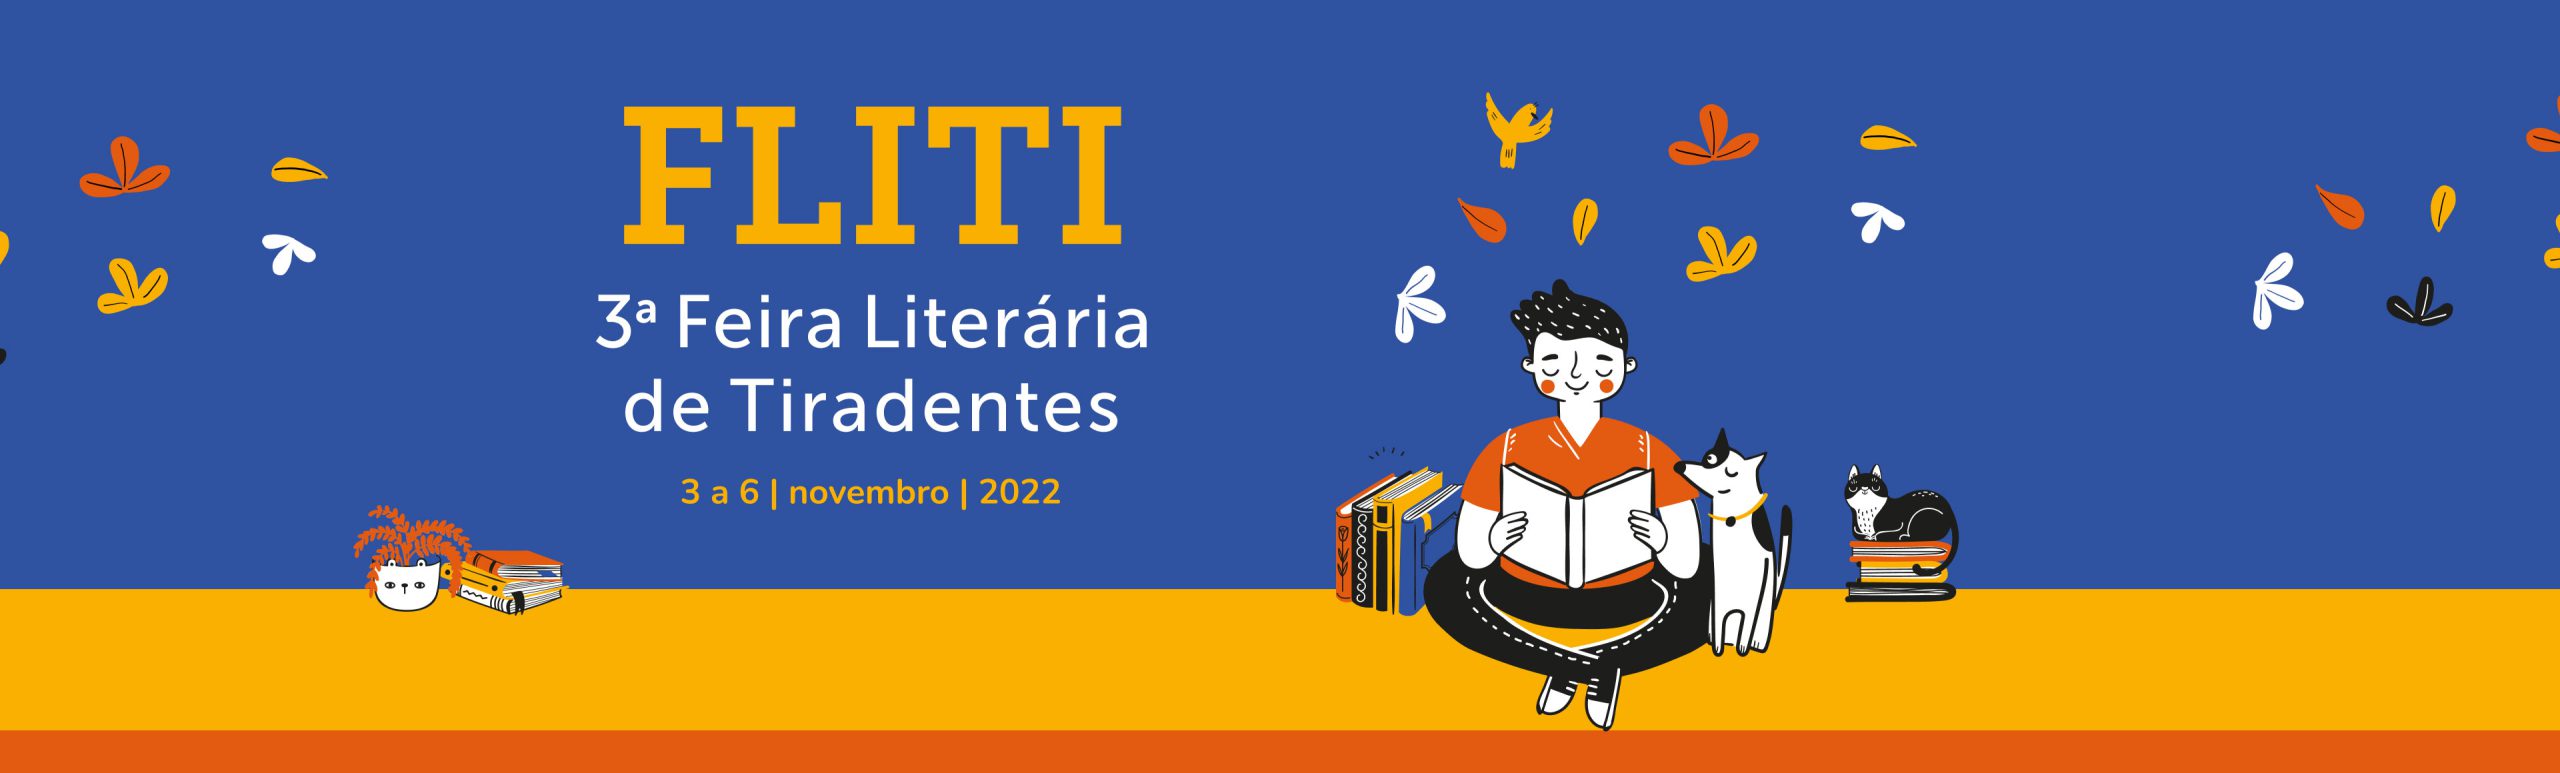 FLITI 2022 - Banner Principal